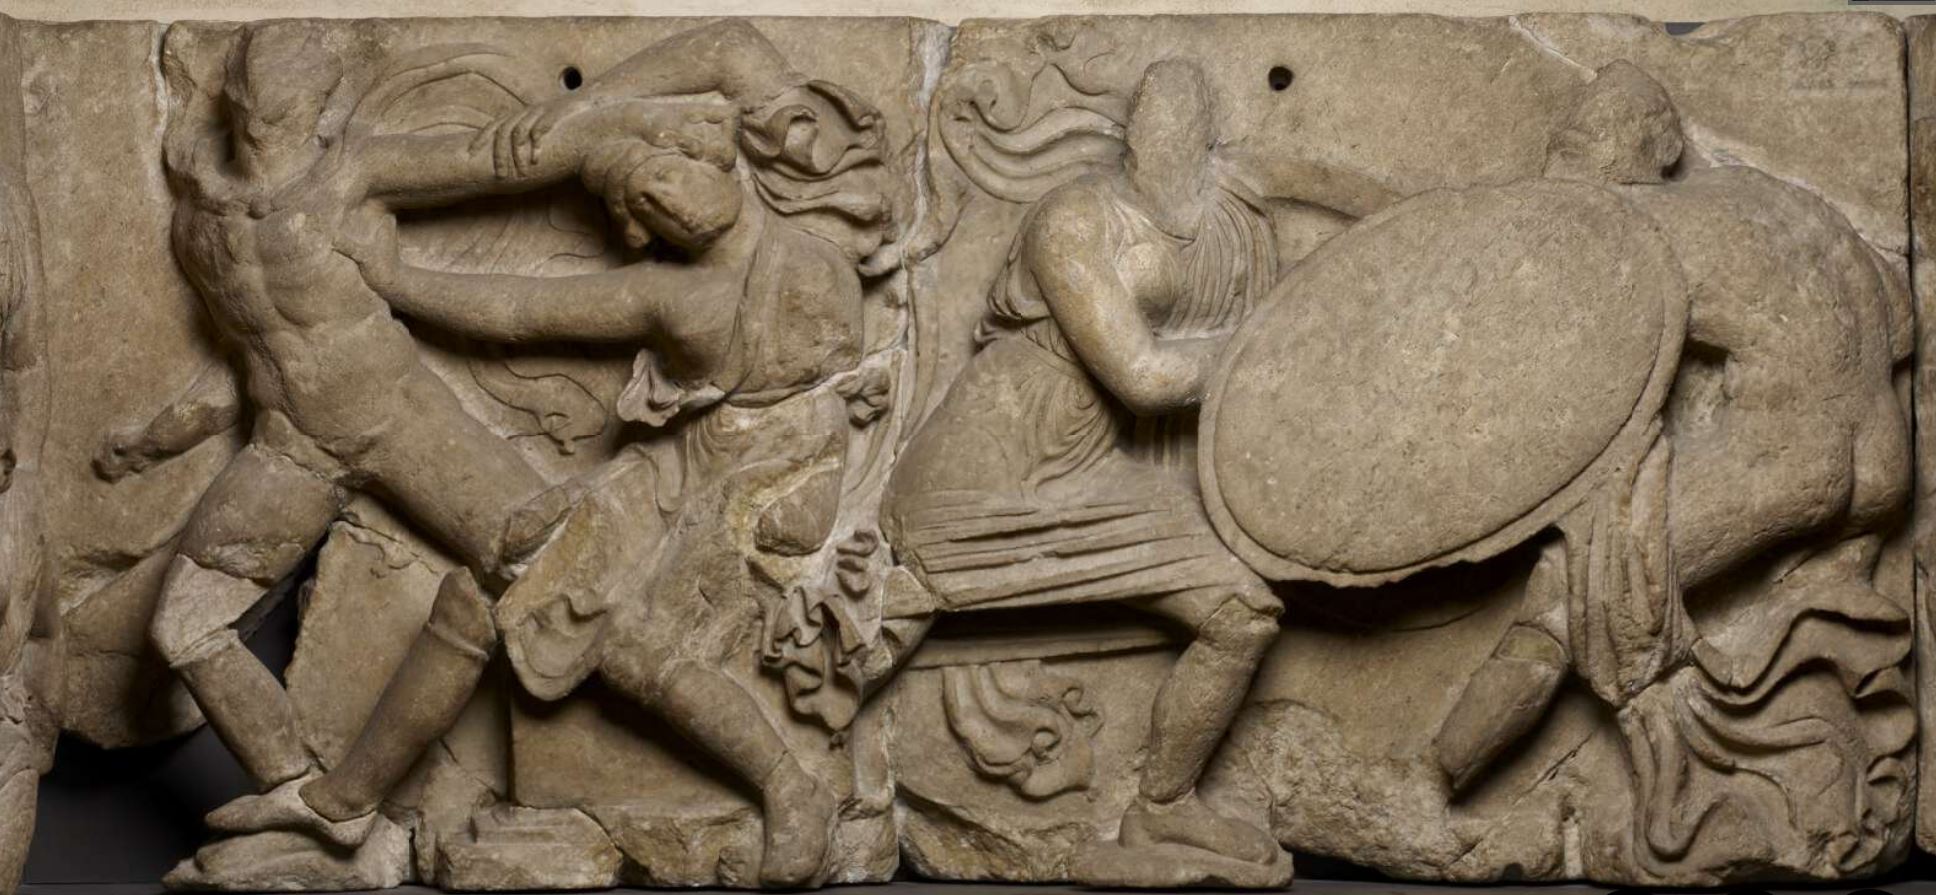 combats 420-400 av JC Combat entre Grec et Amazone Frise du temple of Apollo Epikourios at Bassai, British Museum deux duels